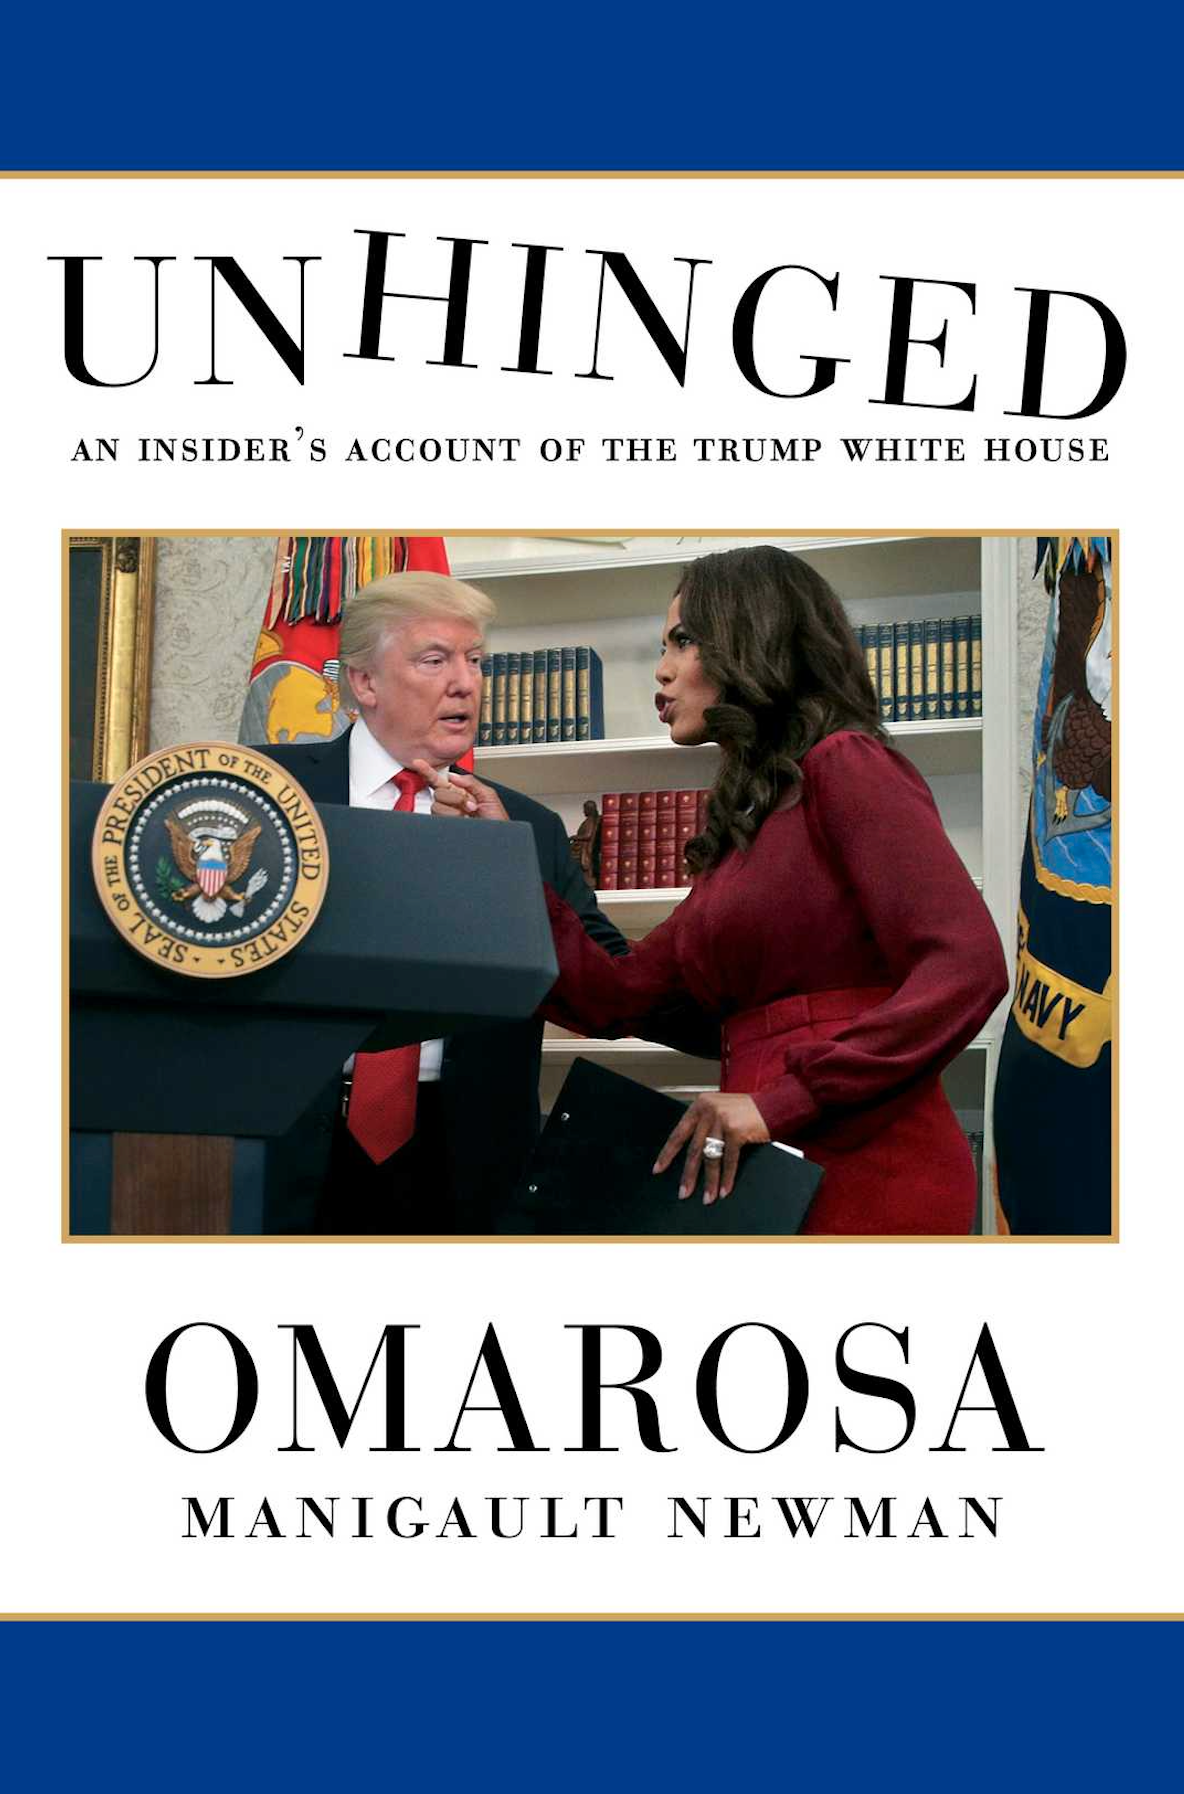 Omarosa Manigault Newmans bok om Vita huset släpps under nästa vecka.